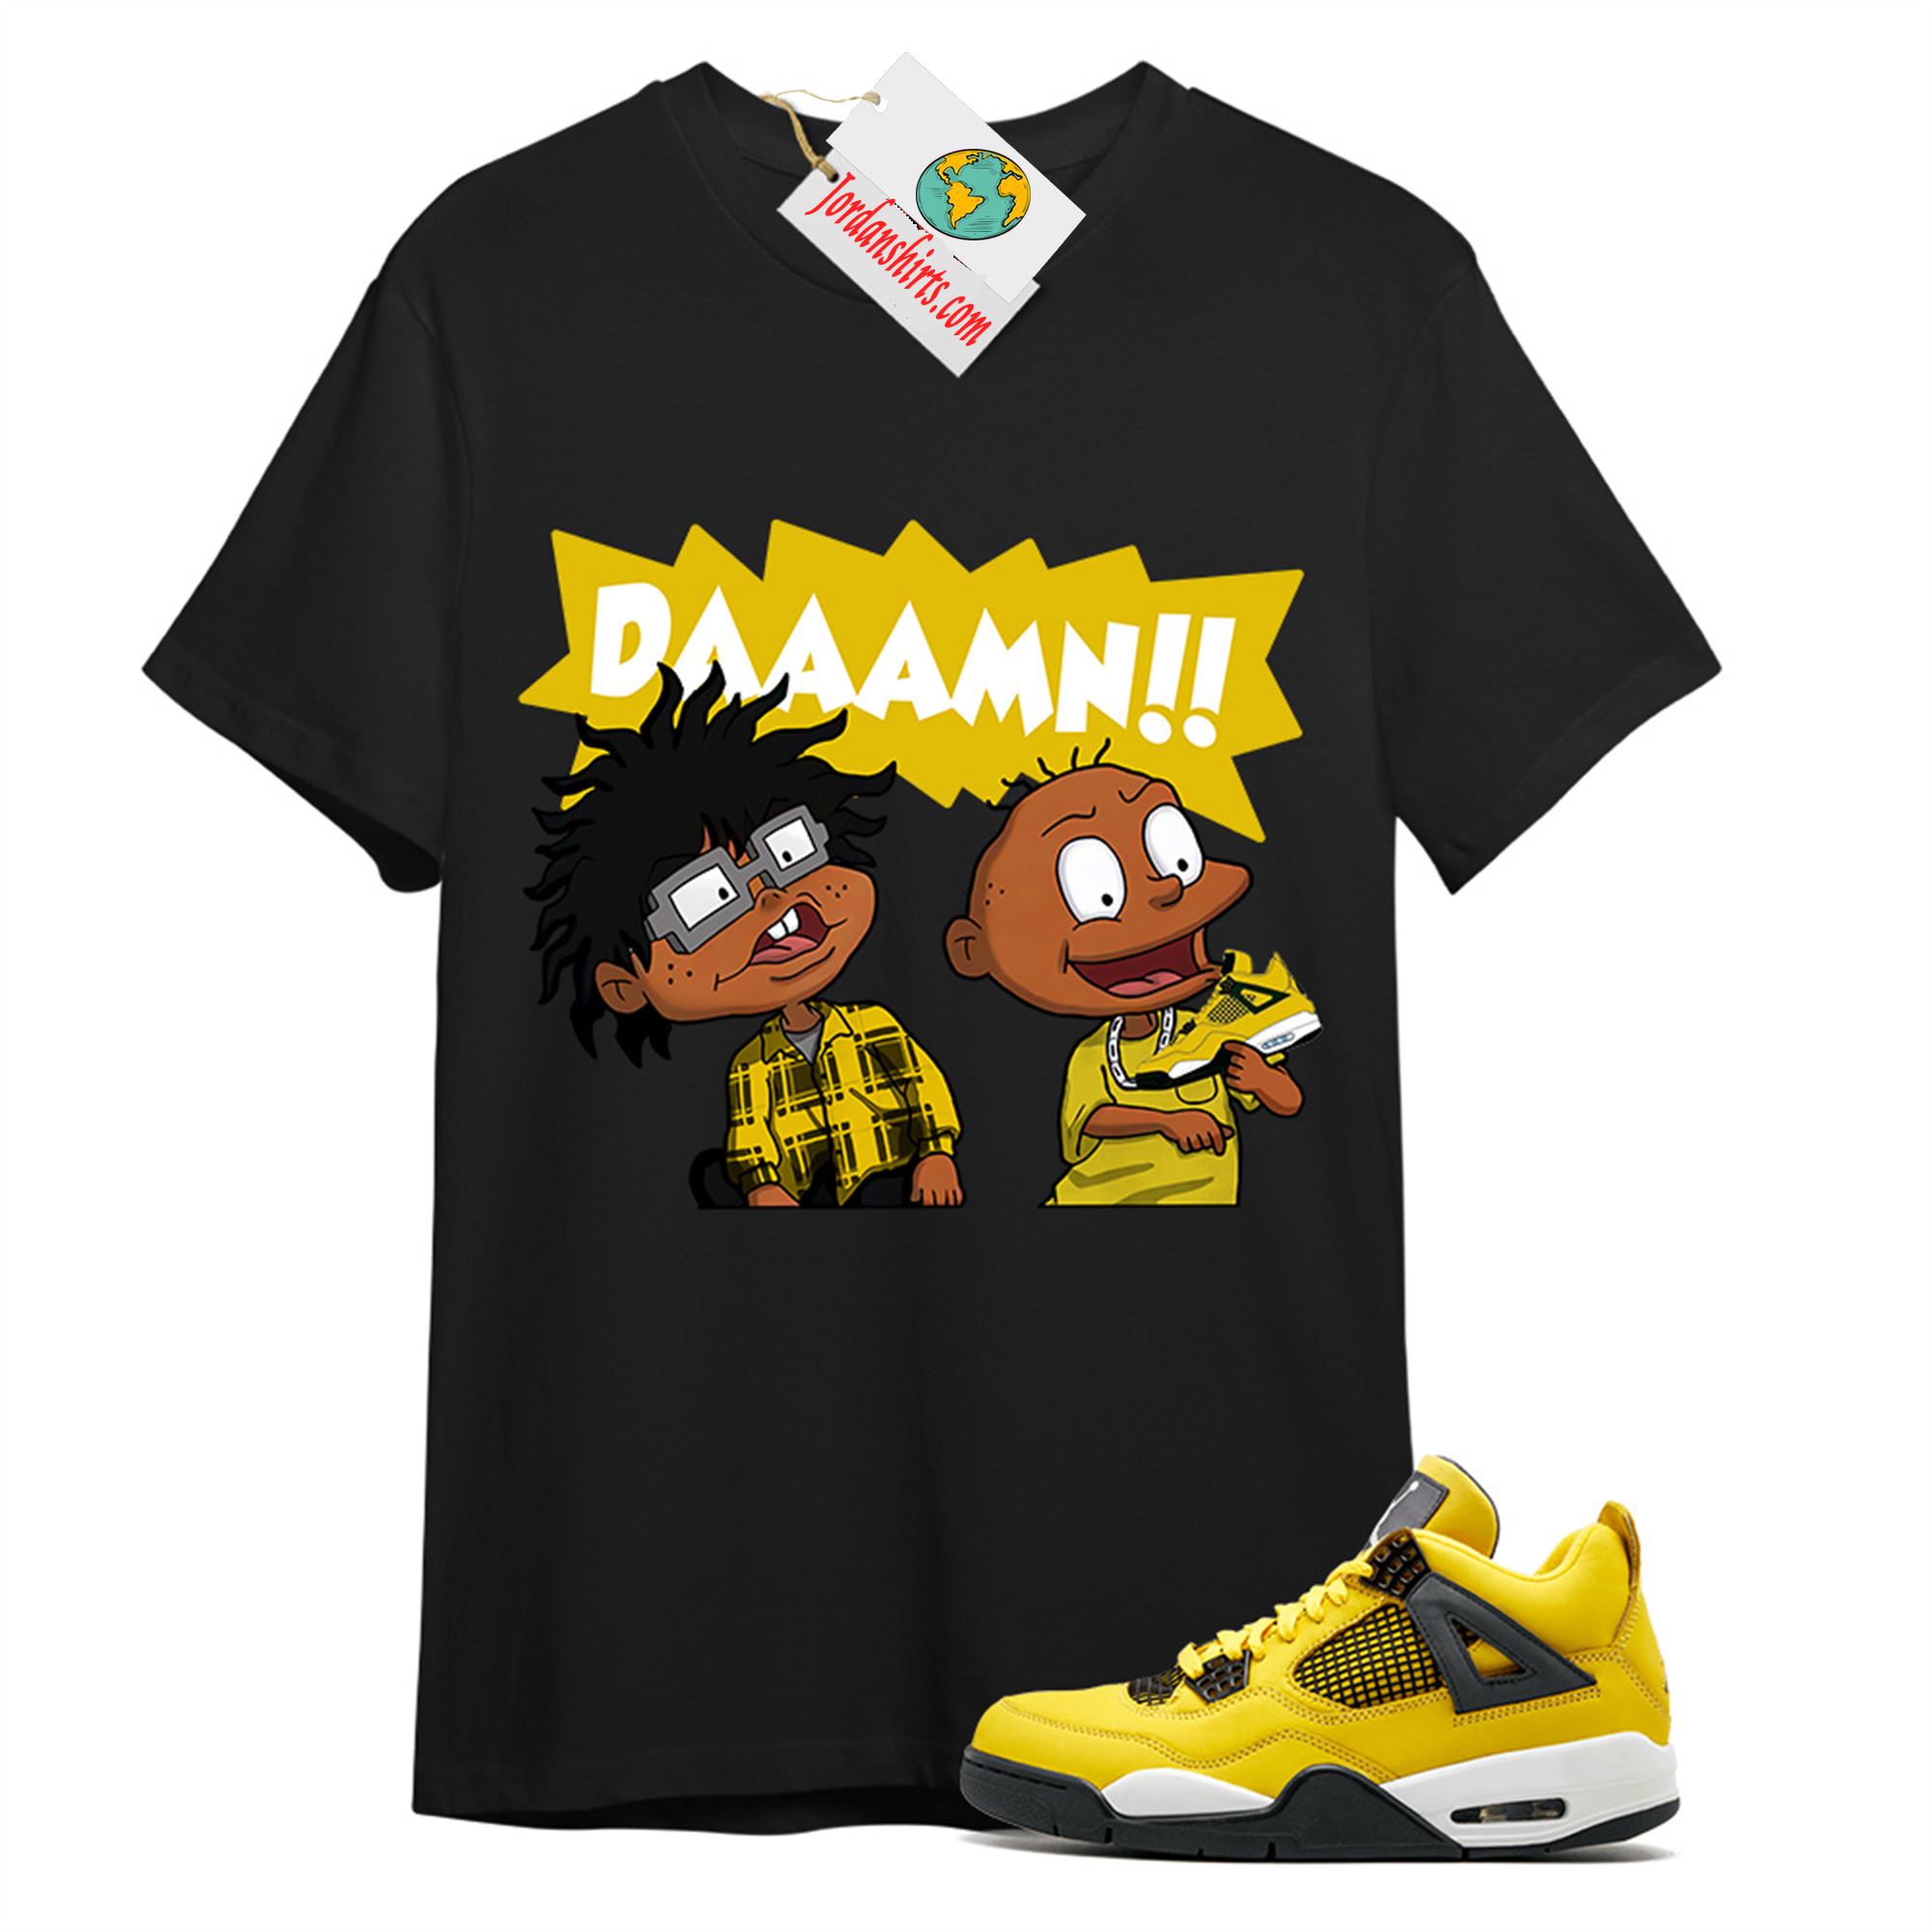 Jordan 4 Shirt, Damn Meme Rugrats Black T-shirt Air Jordan 4 Tour Yellowlightning 4s Size Up To 5xl